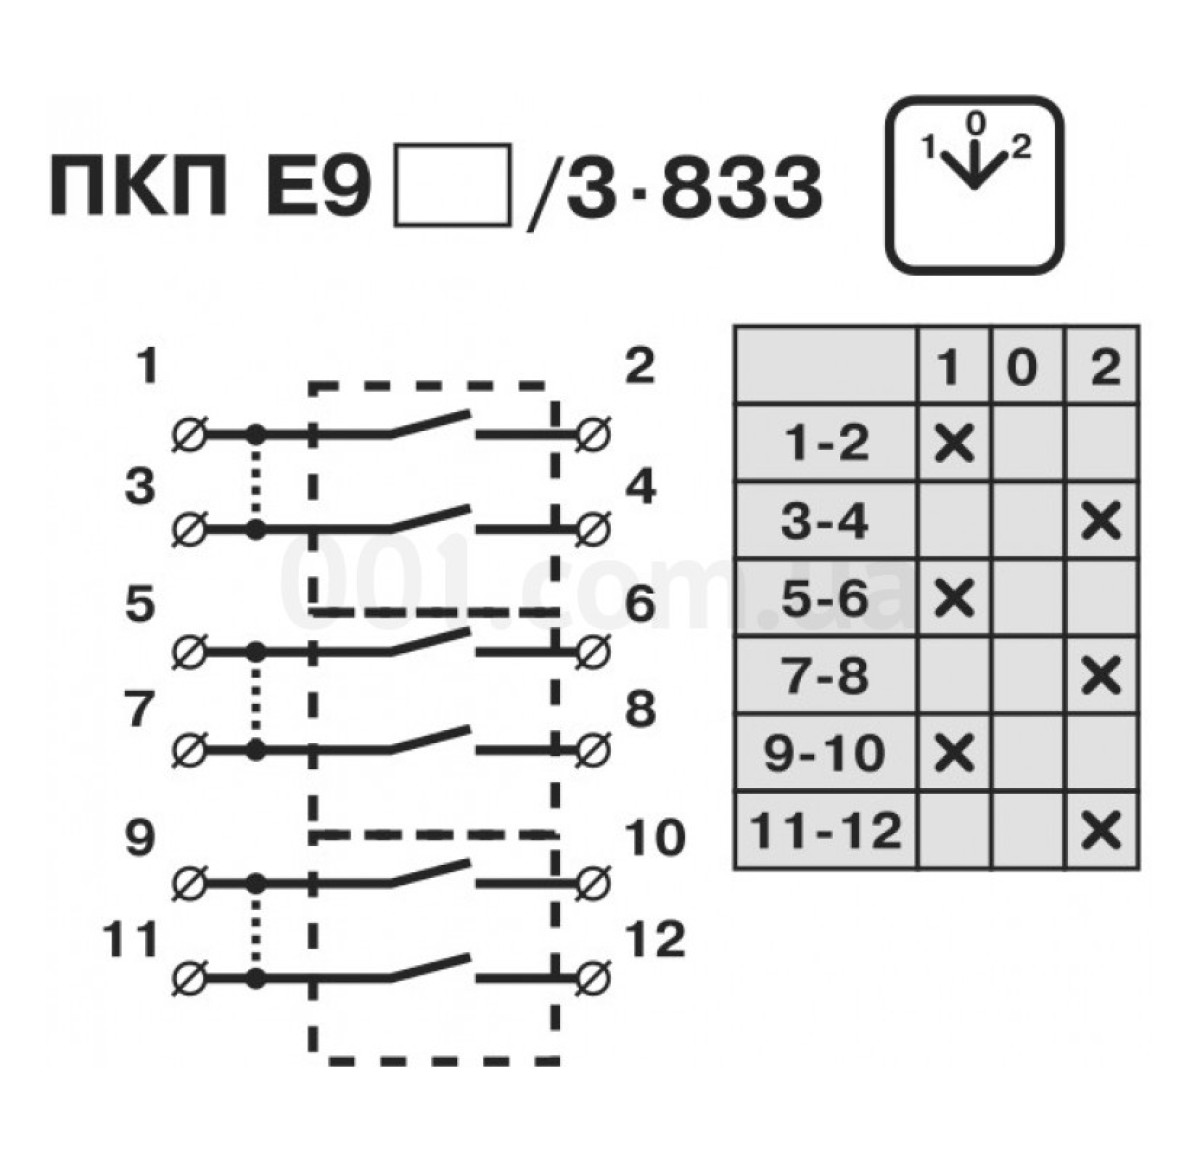 Переключатель кулачковый пакетный ПКП Е9 40А/3.833 (1-0-2) 3P, АСКО-УКРЕМ 98_95.jpg - фото 3